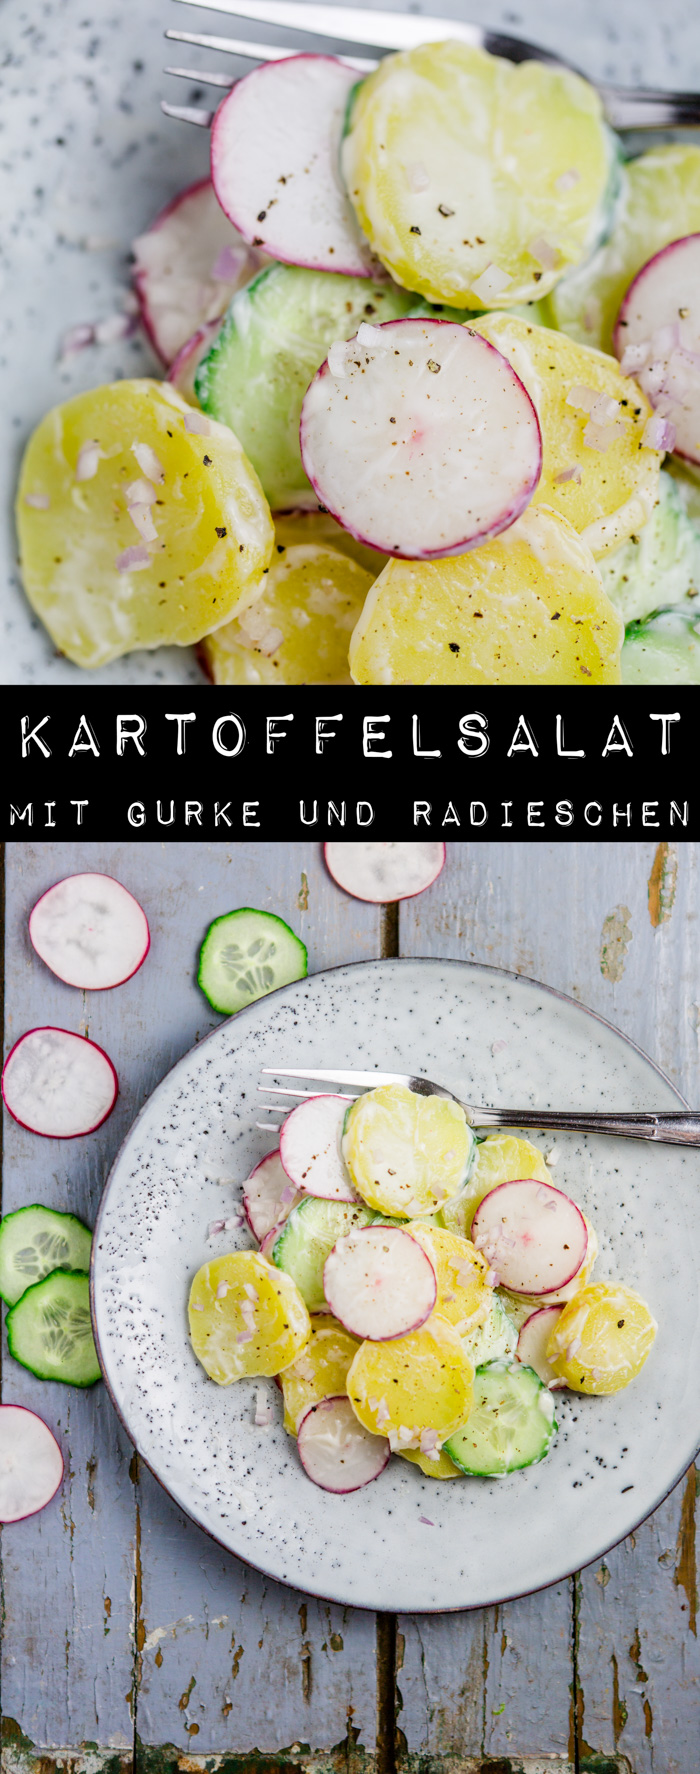 Kartoffelsalat mit Gurke und Radieschen-5 - Kuechenchaotin